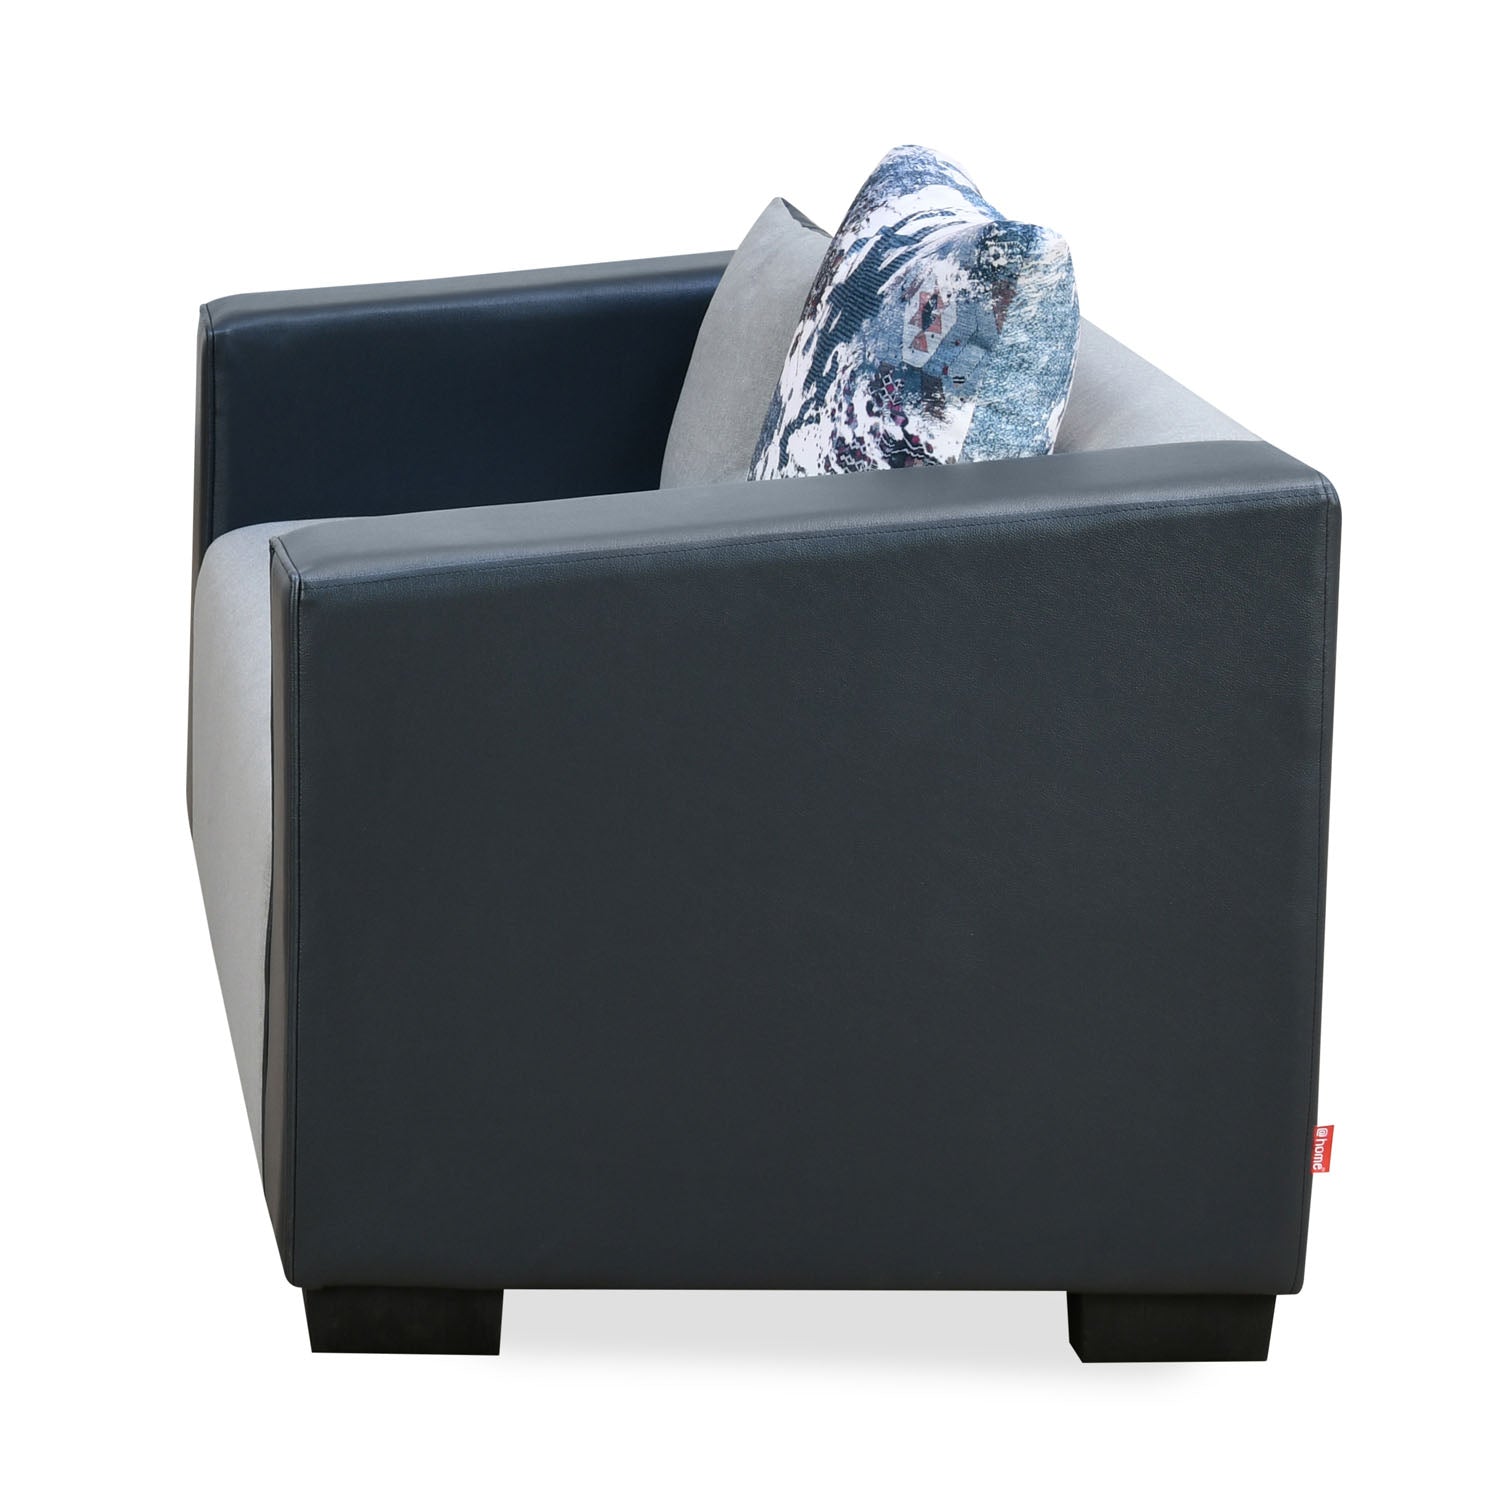 Corbin Fabric 2 Seater Sofa (Grey)